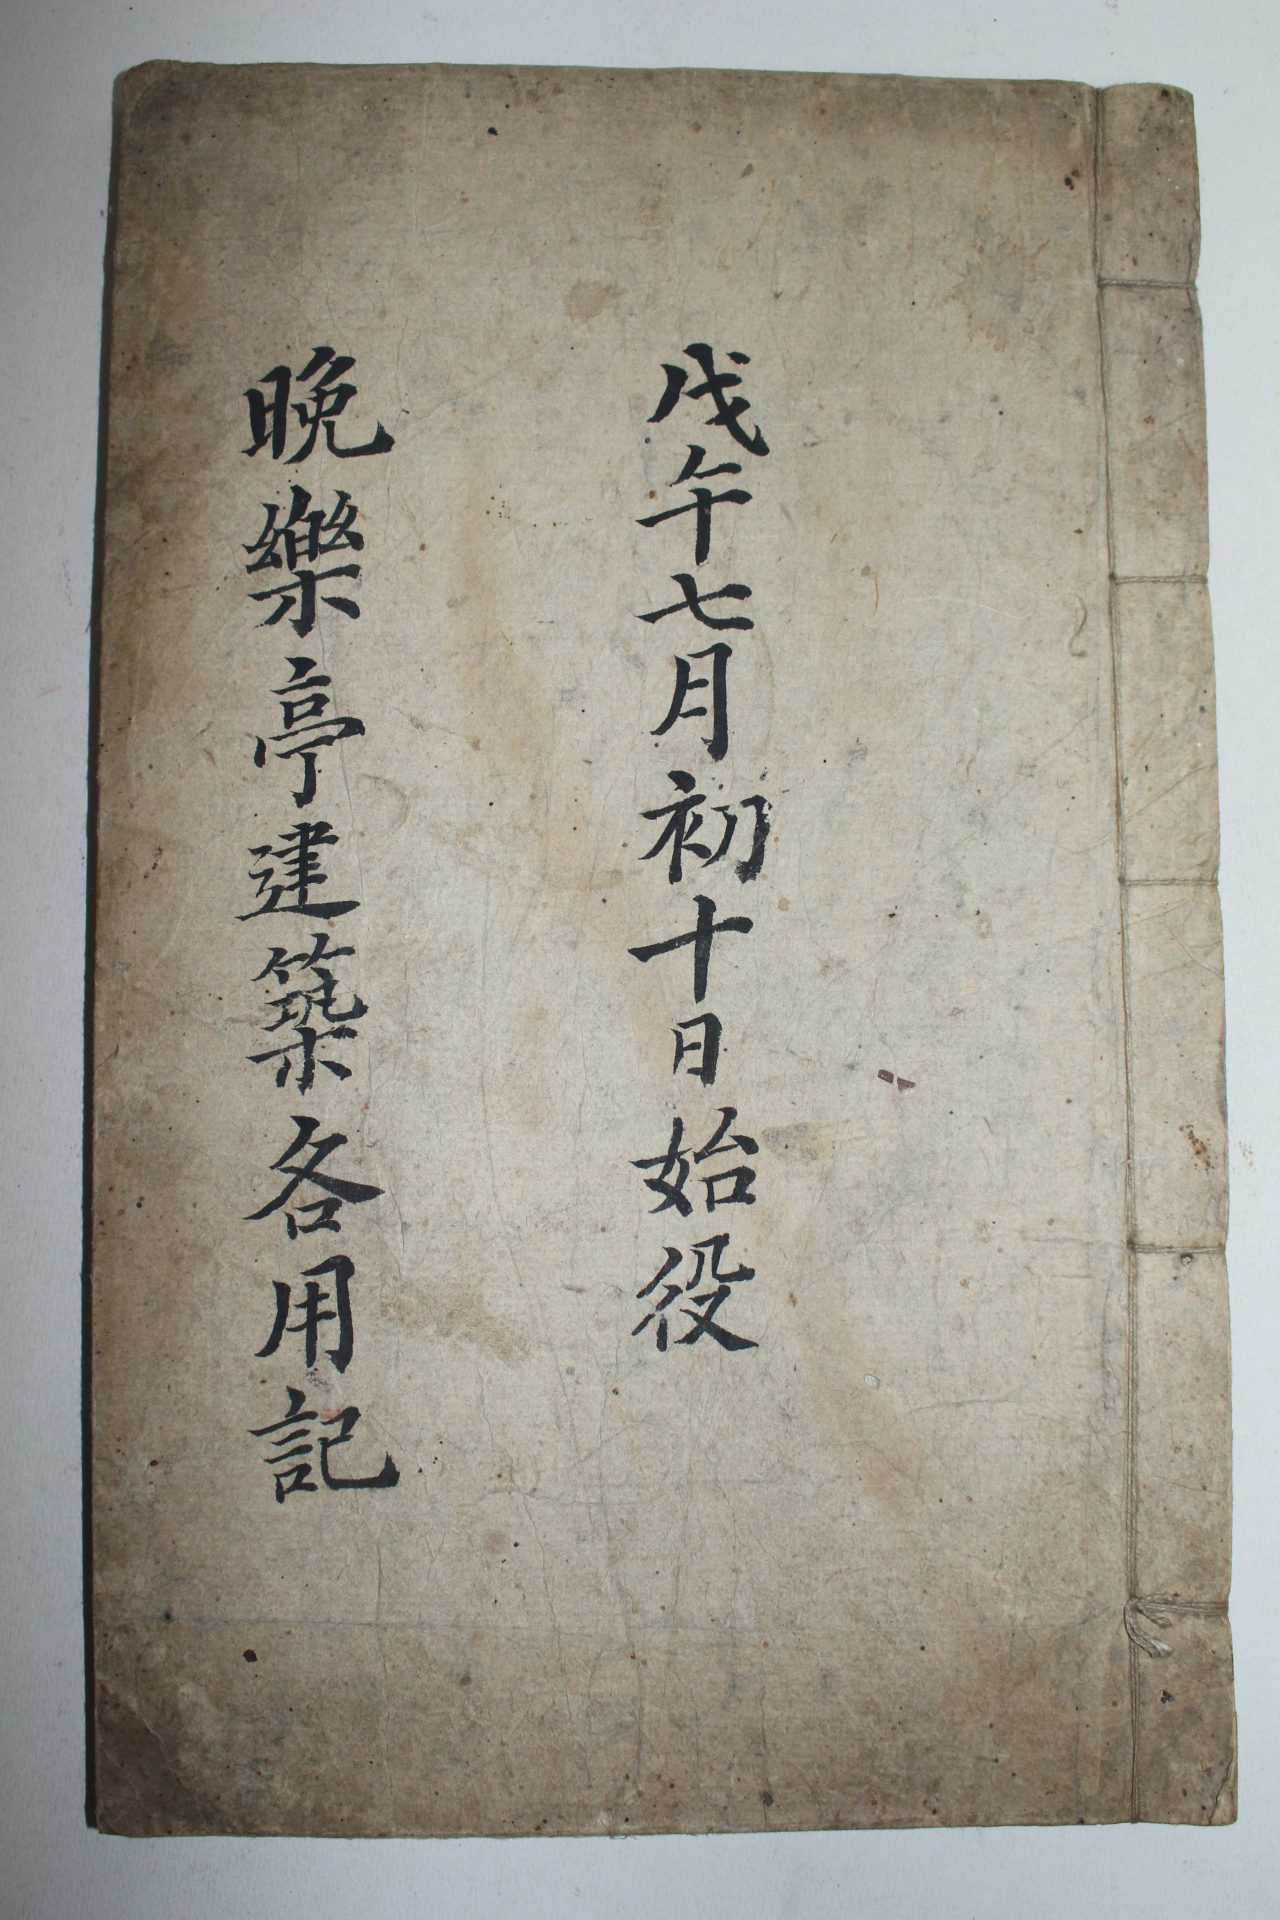 조선시대 필사본 만락정건축각용기(晩樂亭建築各用記) 1책완질